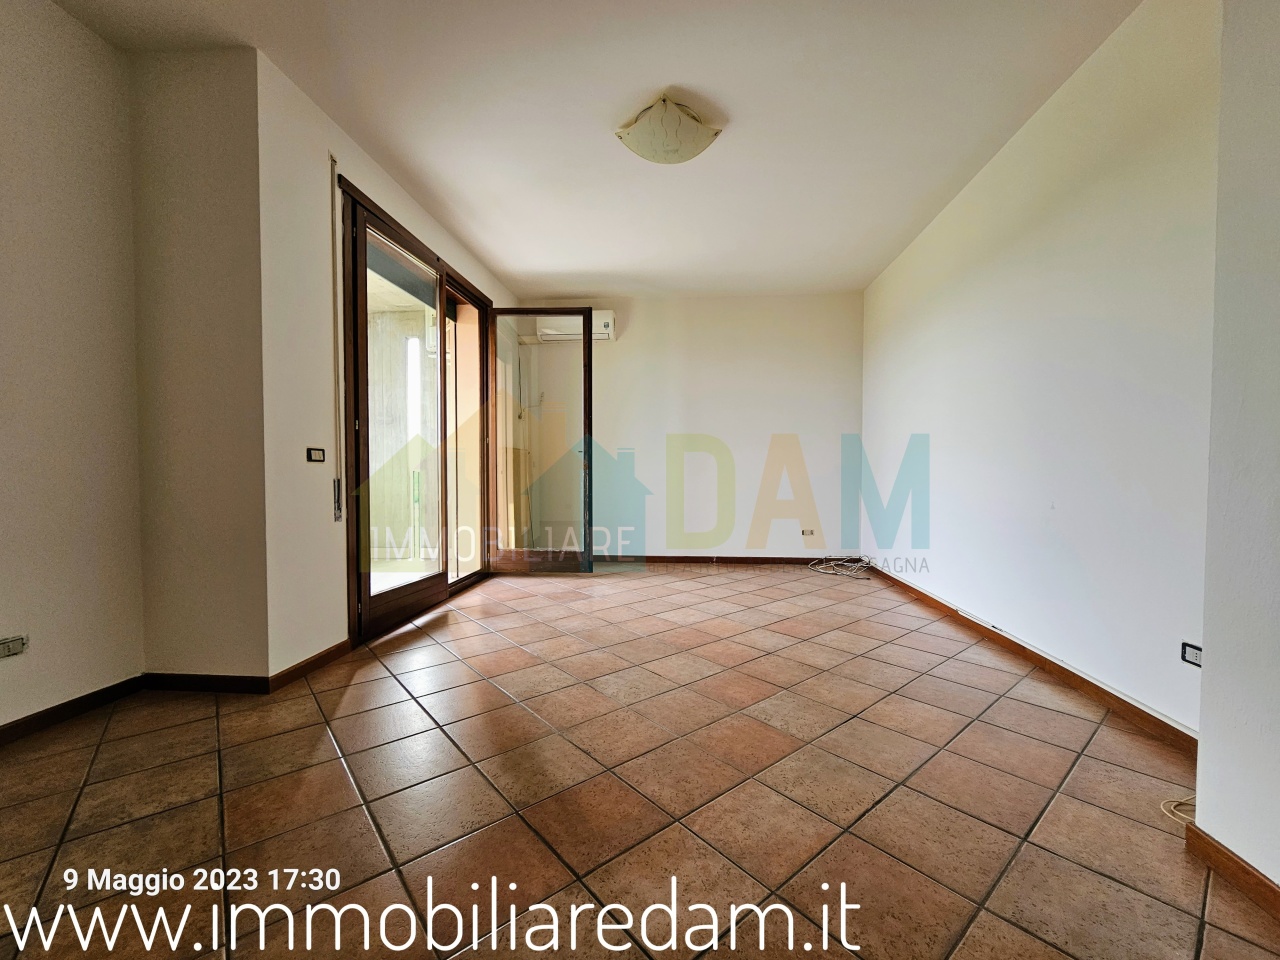 Appartamento in vendita a Vicenza, 6 locali, prezzo € 128.000 | PortaleAgenzieImmobiliari.it